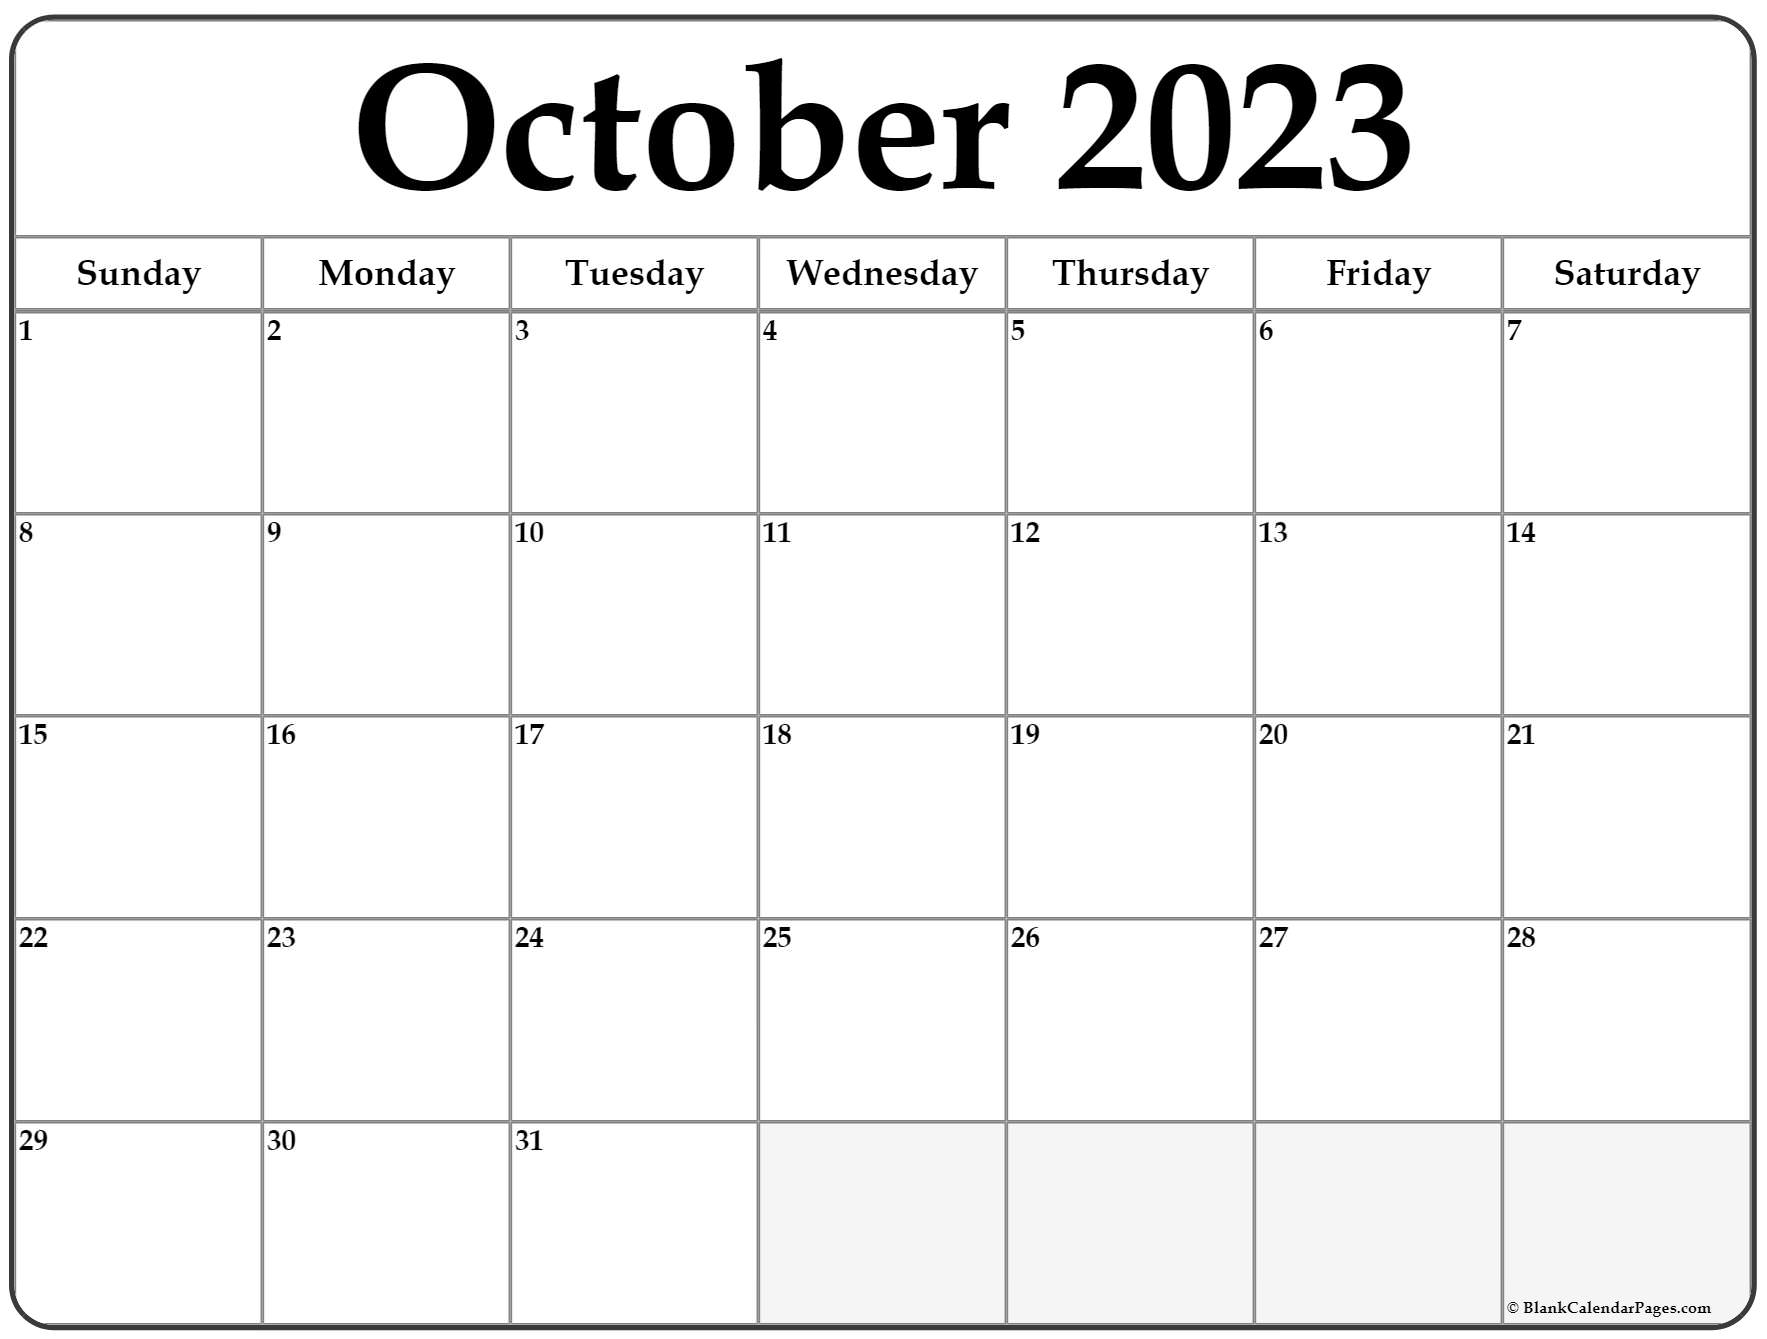 October 2023 Calendar October 2023 Calendar October News